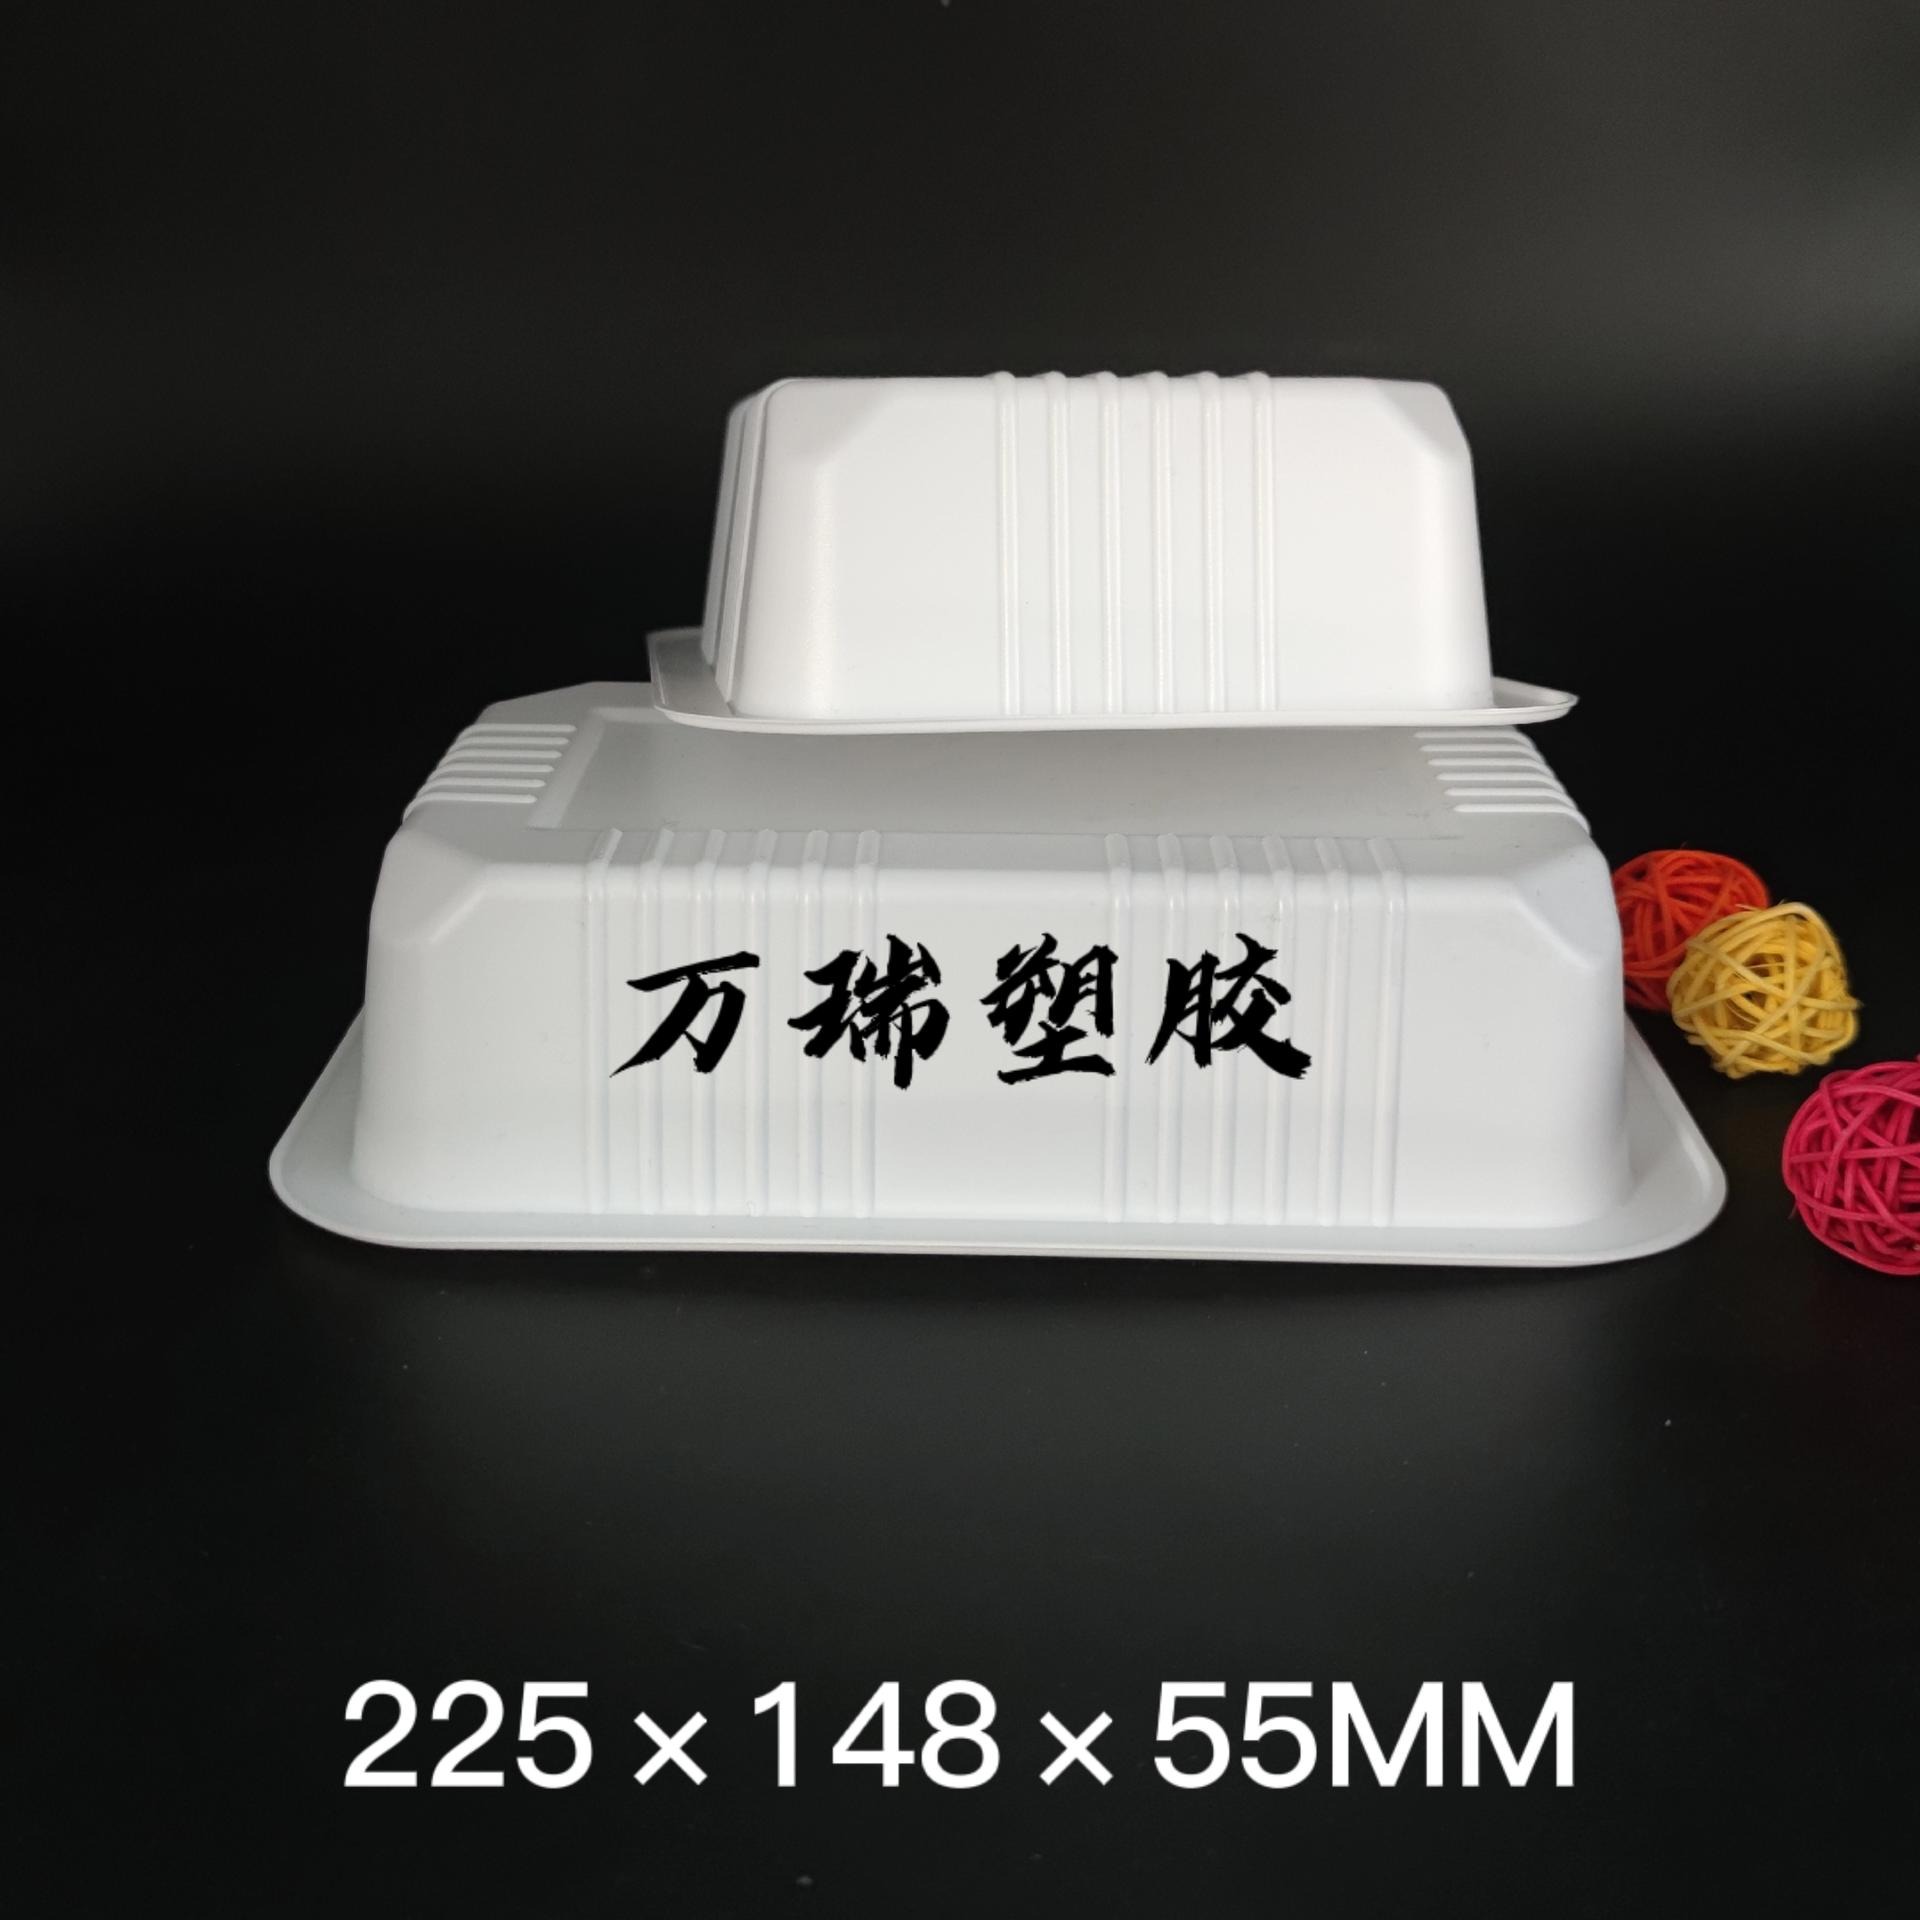 万瑞厂家直供一次性塑料盒 225*148*55mm塑料盒瓜子盒冷鲜肉盒 牛羊肉卷盒  煎饼盒 卤味盒 PP塑料盒